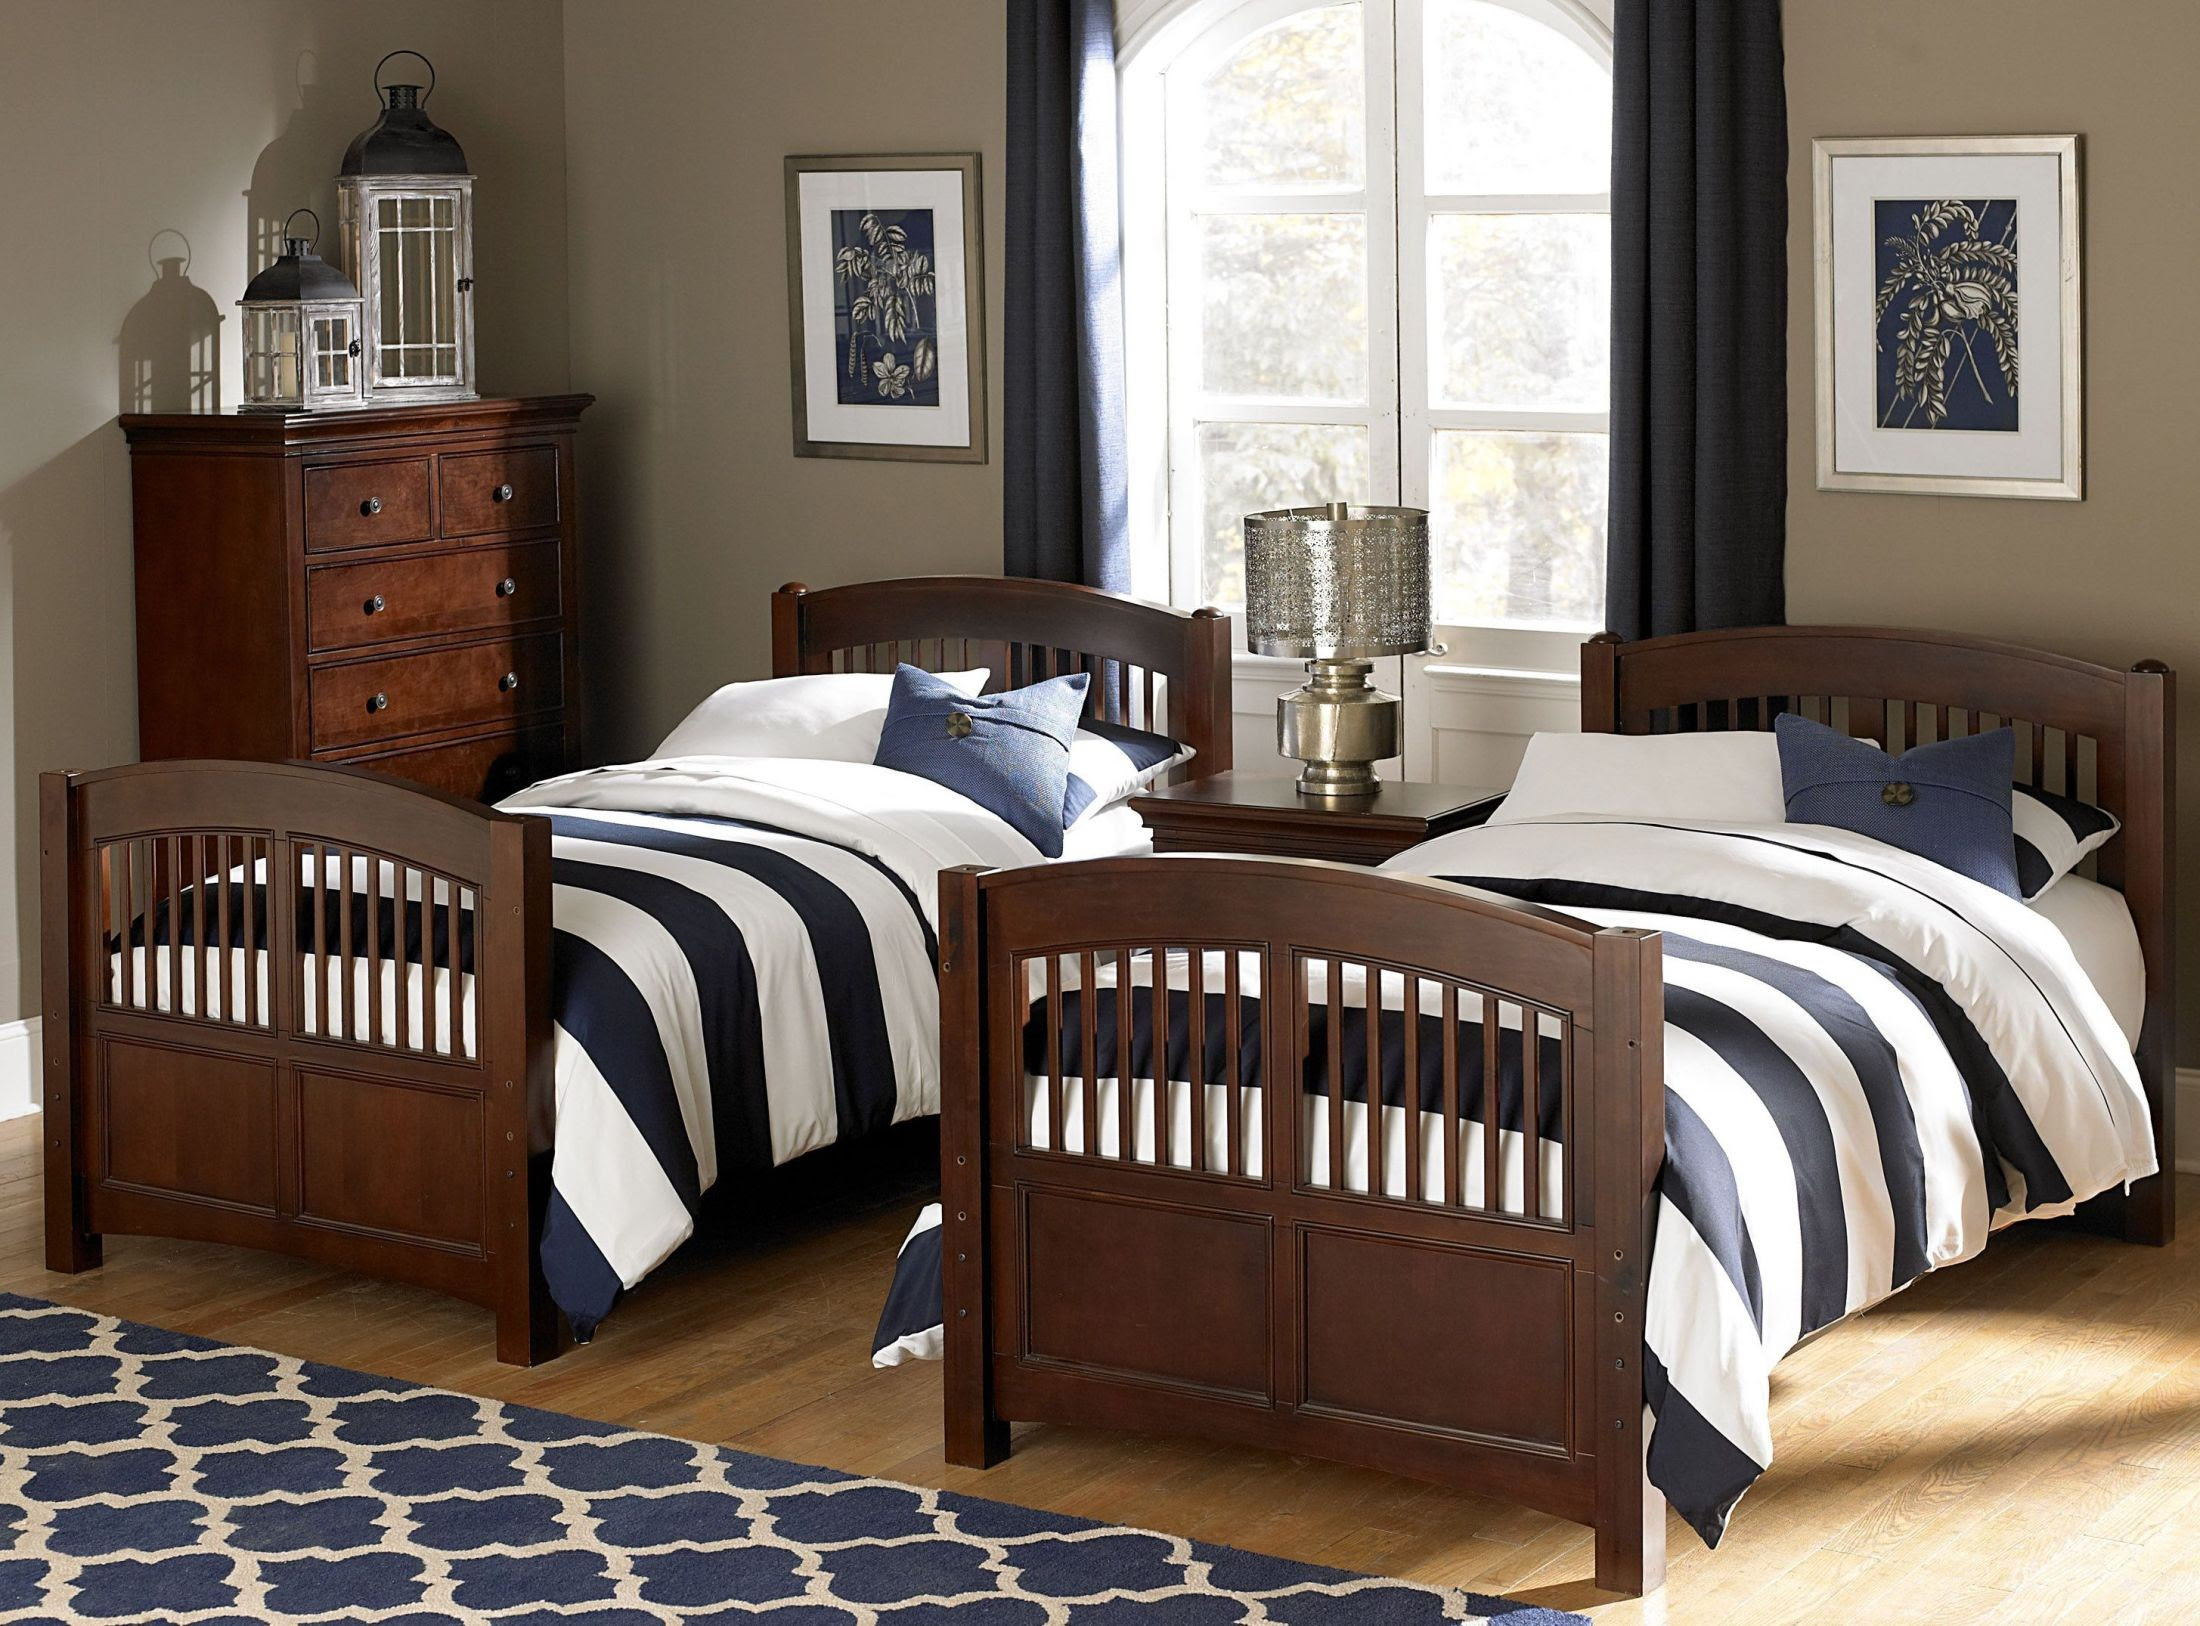 chalked chestnut bedroom furniture